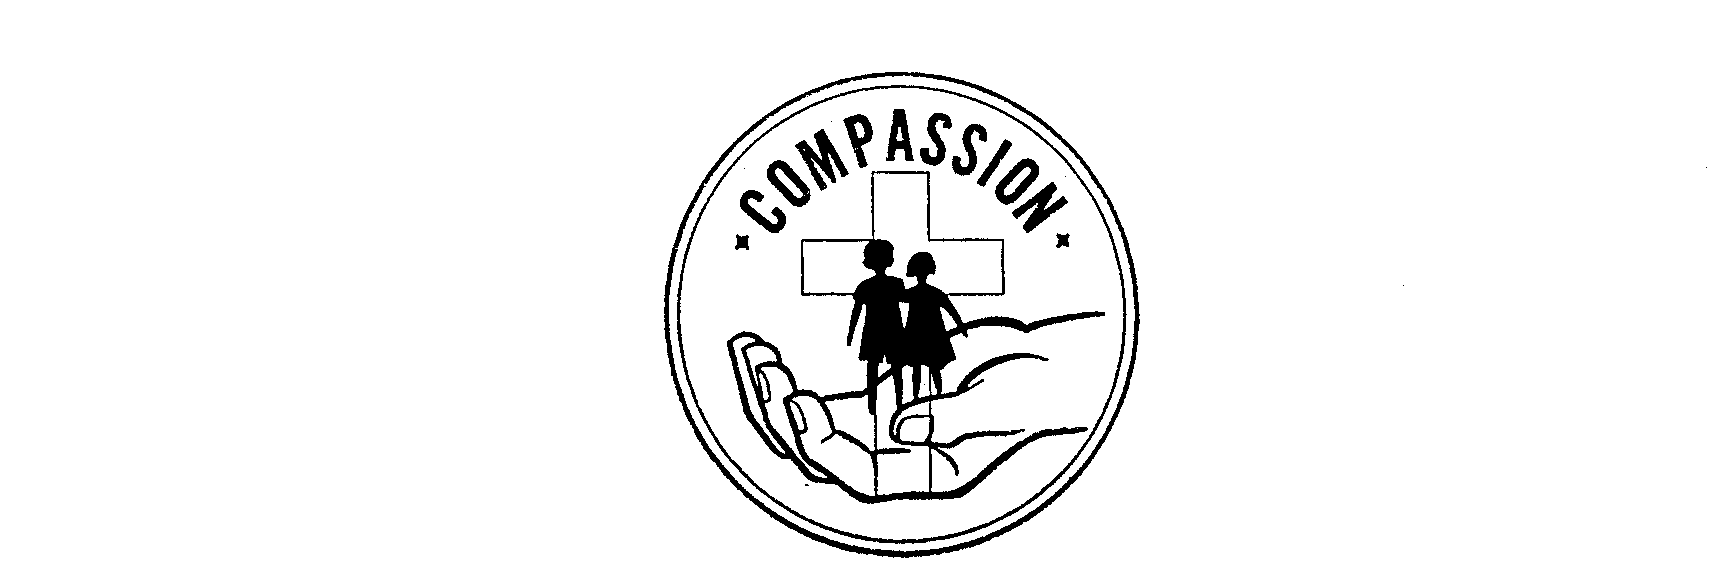 COMPASSION